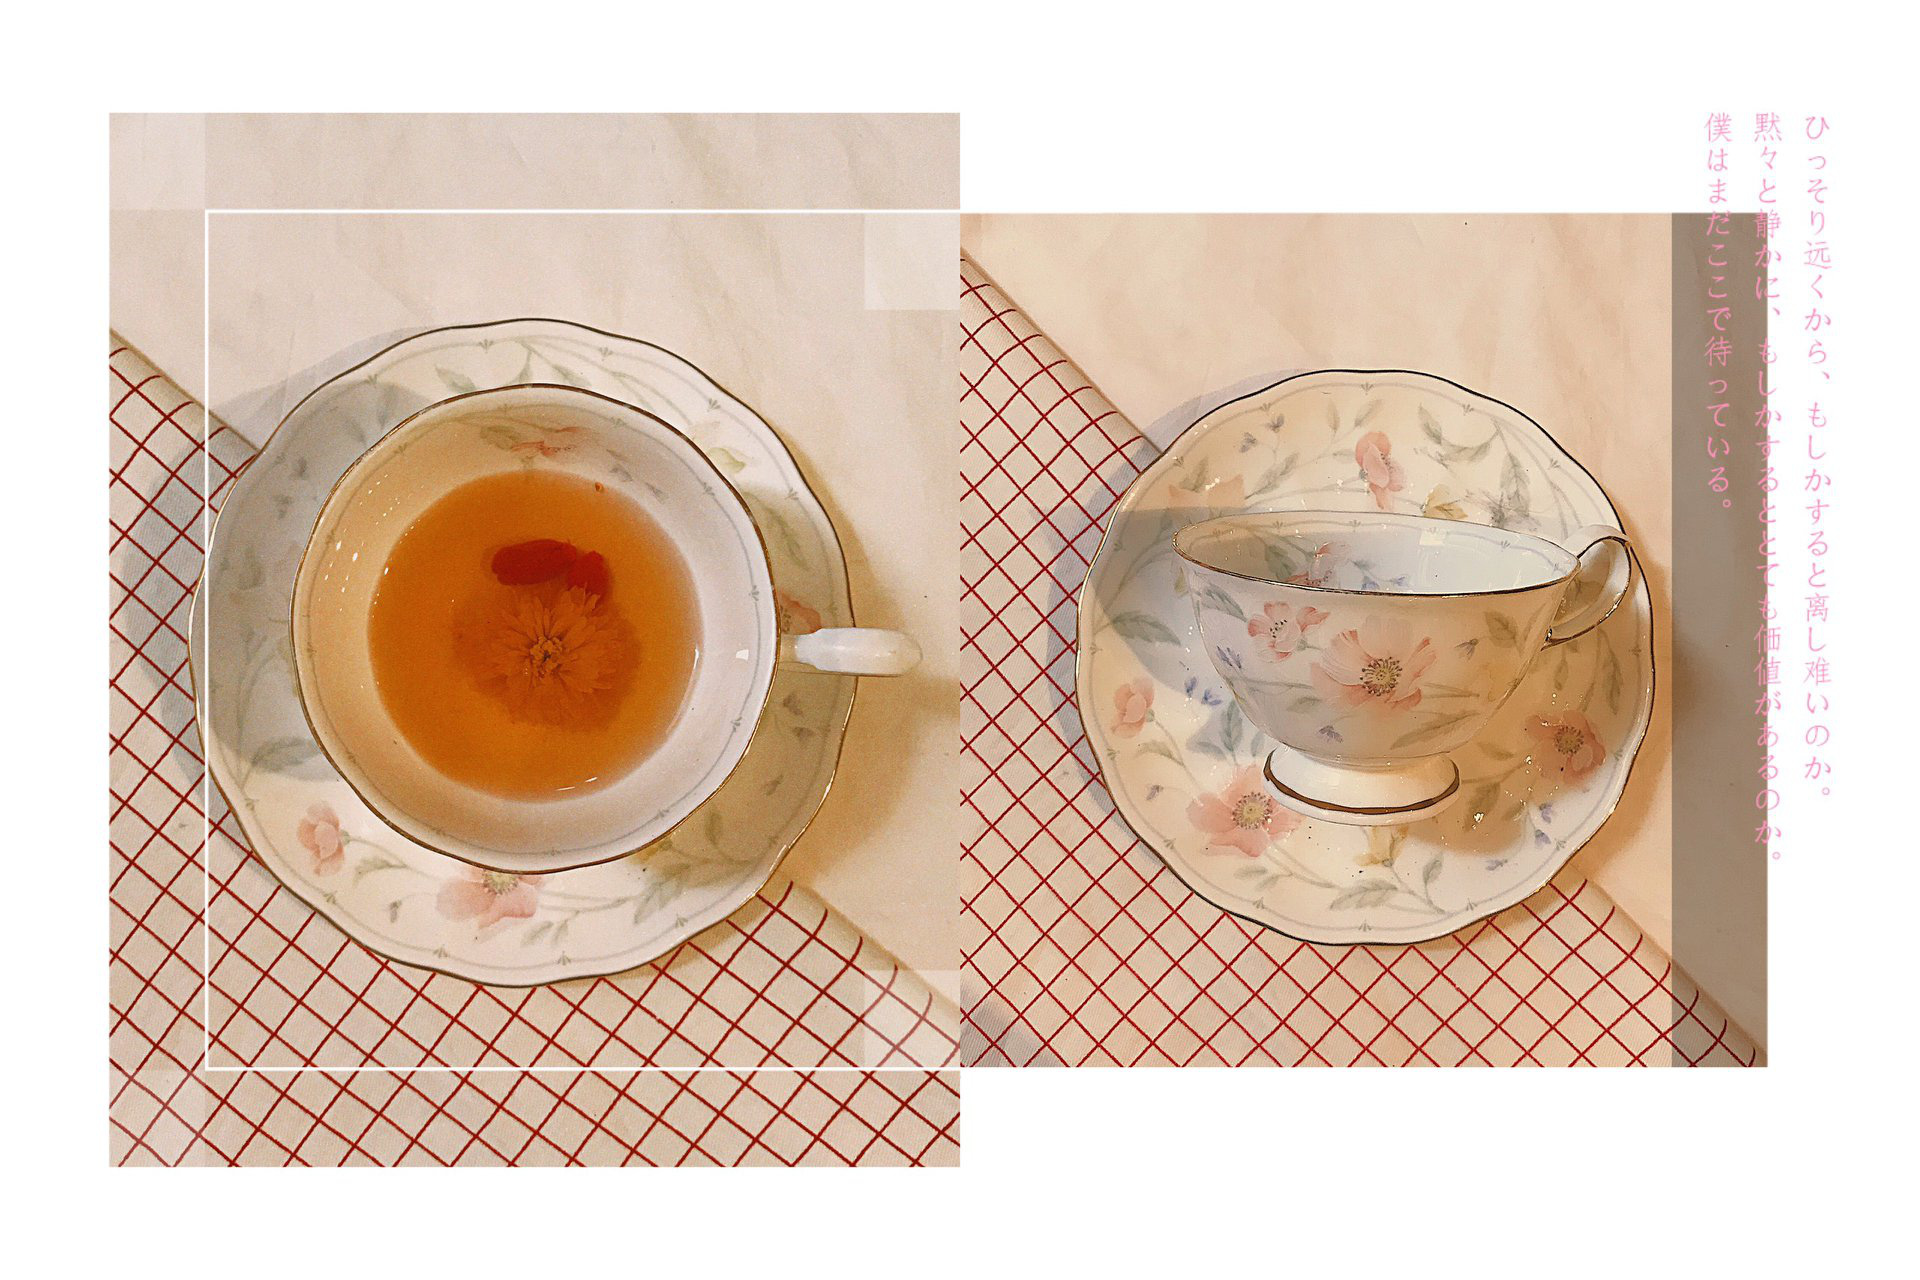 Dành cho team mê sưu tập ly nước, tách uống trà đẹp độc: Style hiện đại có, đậm chất vintage cũng không thiếu - Ảnh 5.